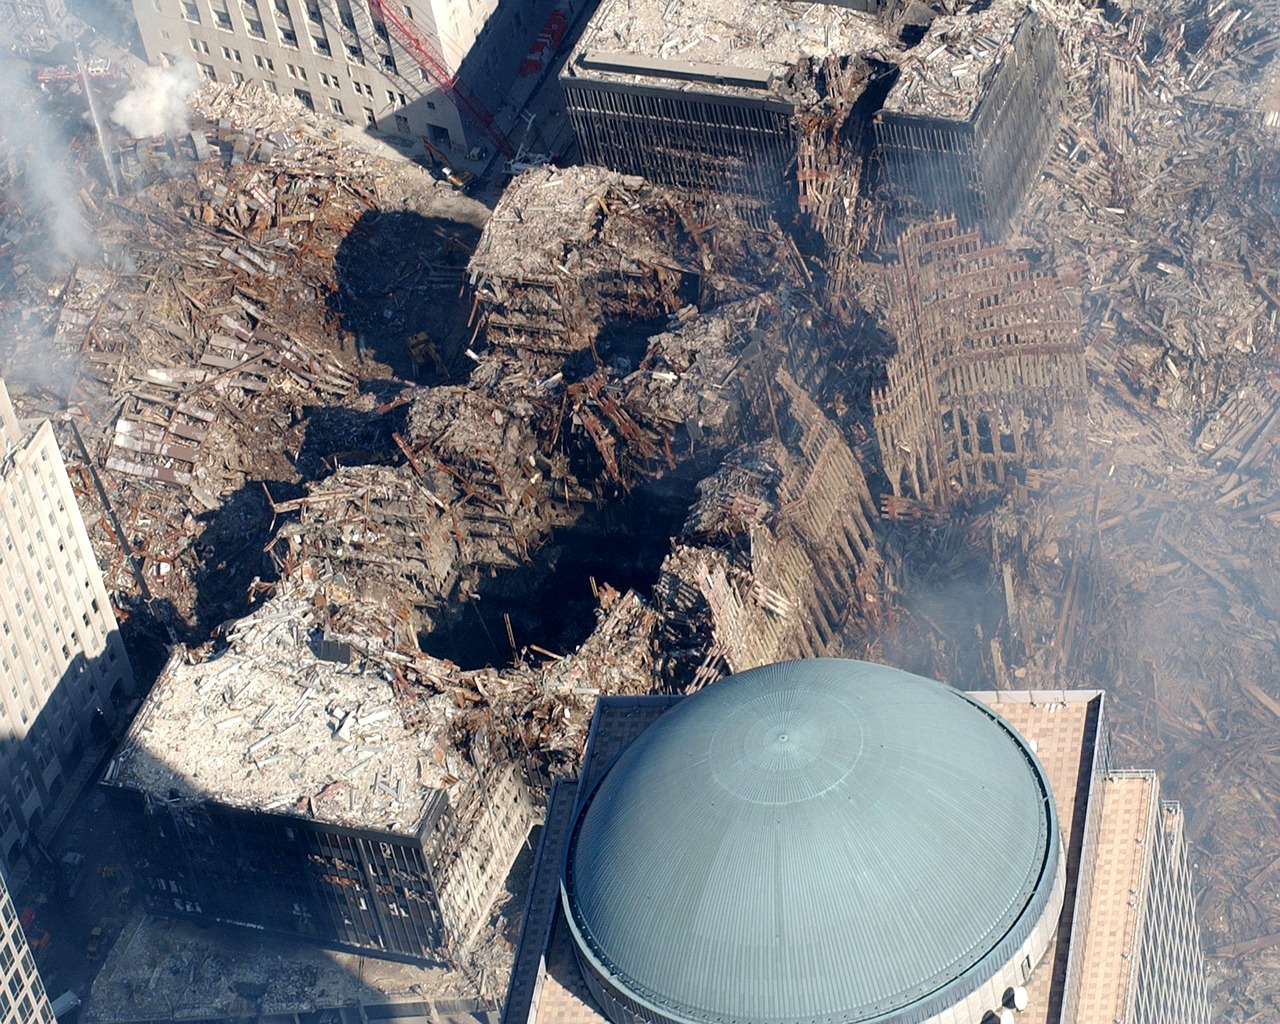 Attentat 11 septembre 2001 WTC New York attaque terroriste effondrement twin towers WTC 9/11 Plare